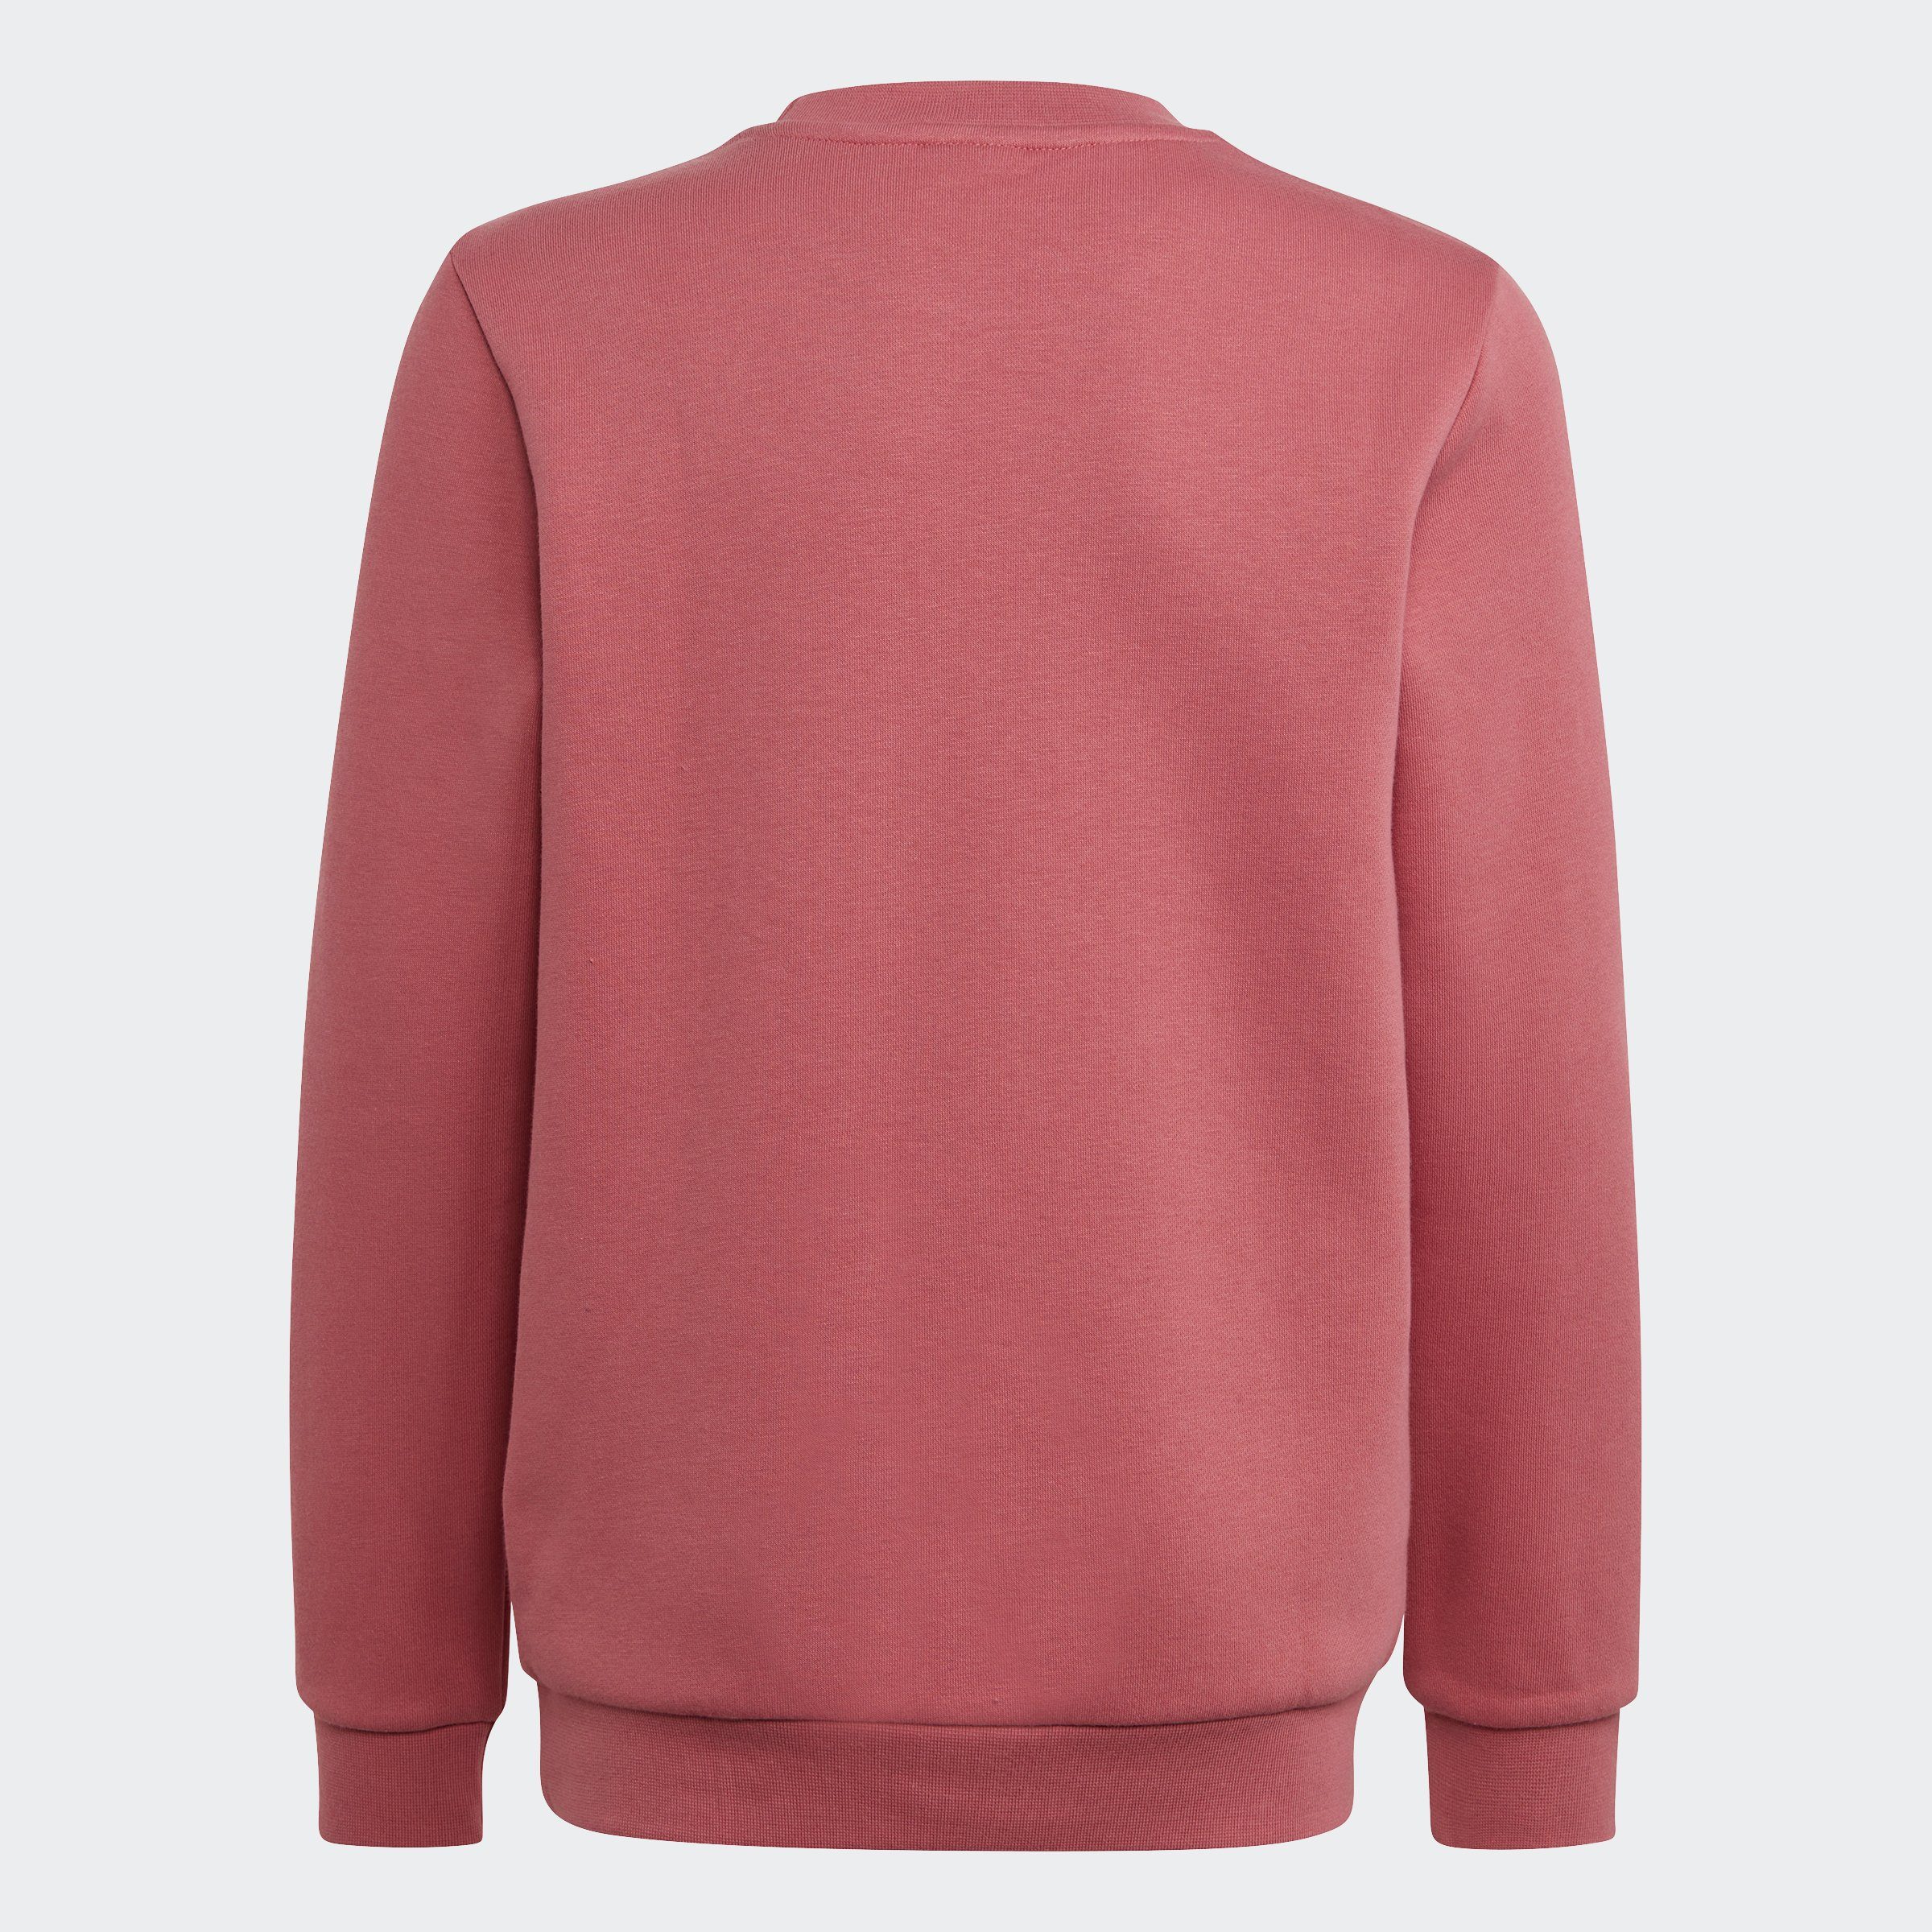 Sweatshirt Pink ADICOLOR Strata adidas Originals